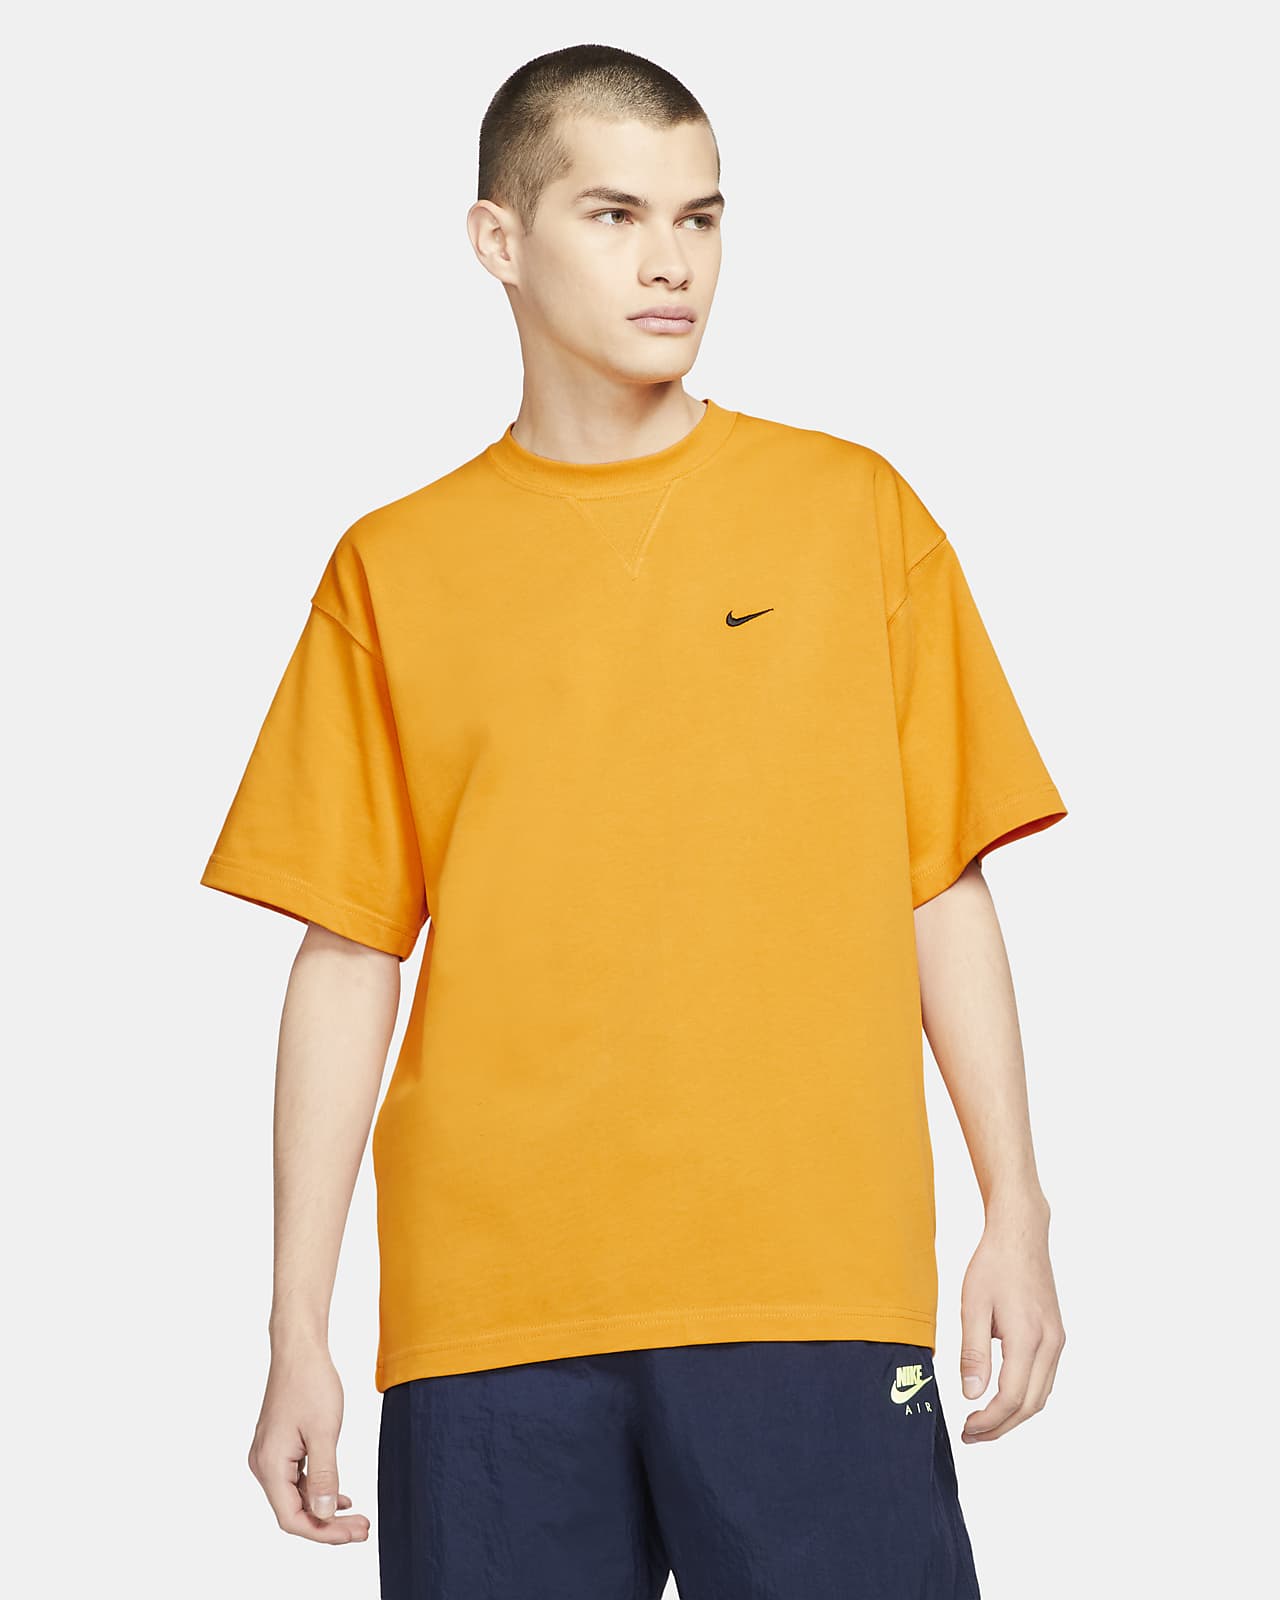 Nike x Kim Jones 男/女短袖T恤